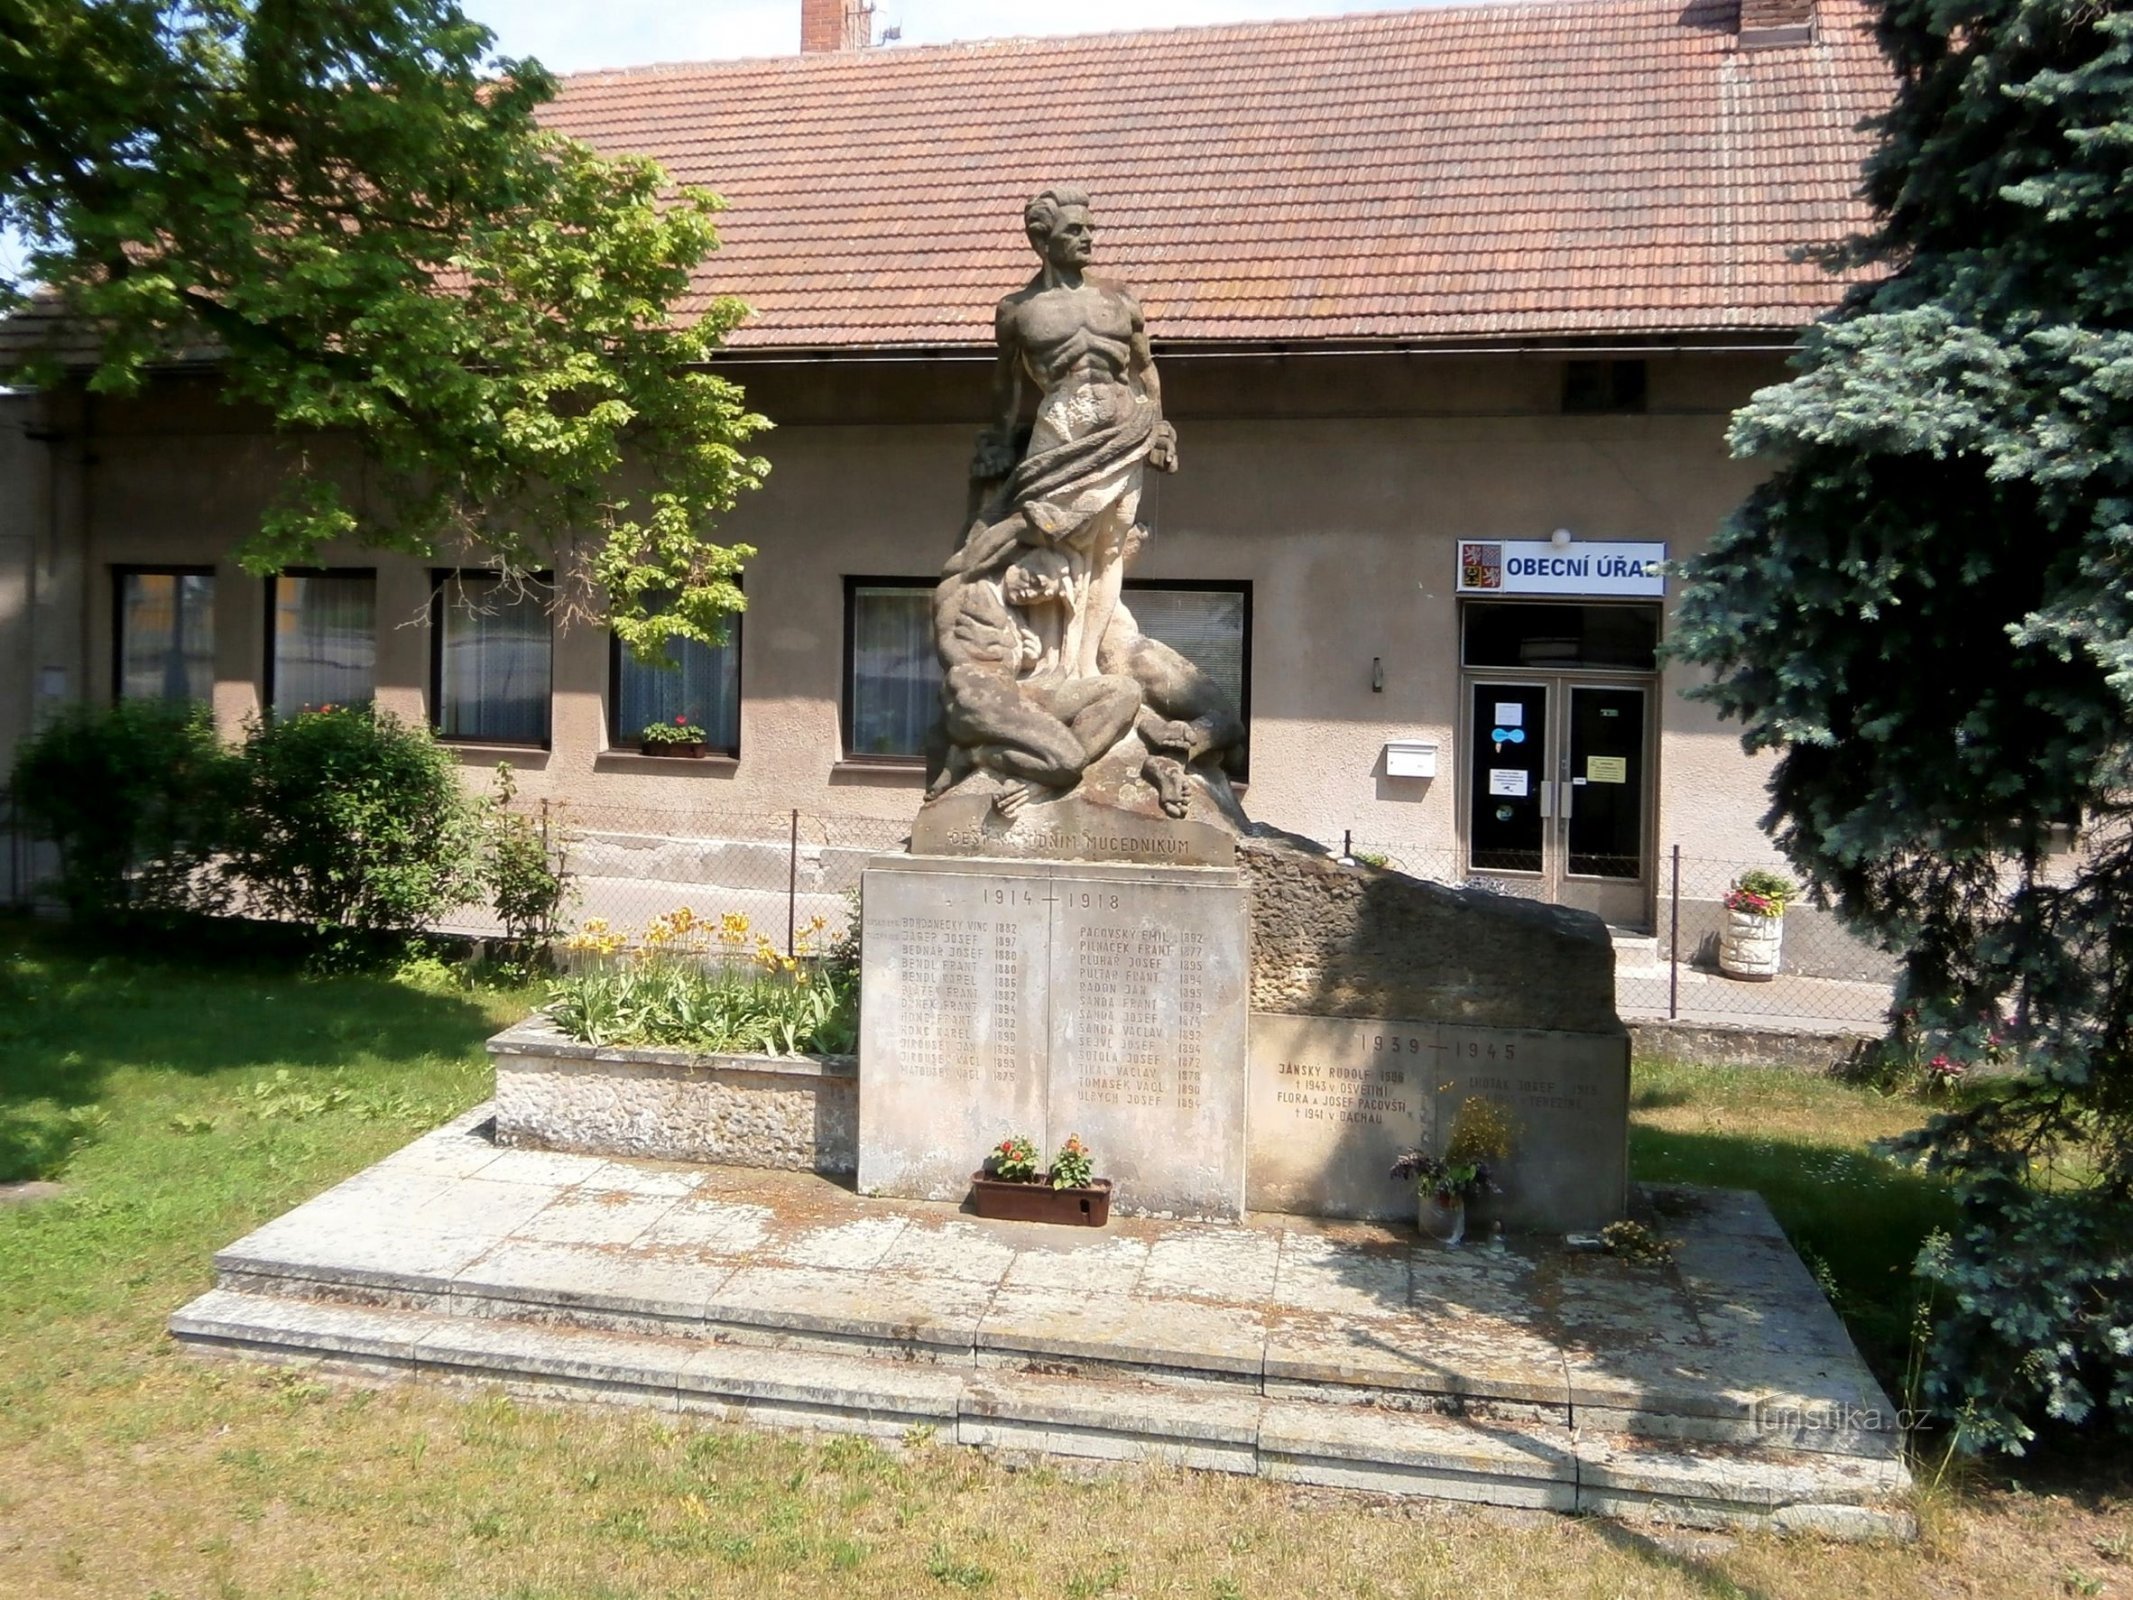 Spomenik žrtvama 1. i 2. svjetskog rata (Stěžery, 21.5.2017. travnja XNUMX.)